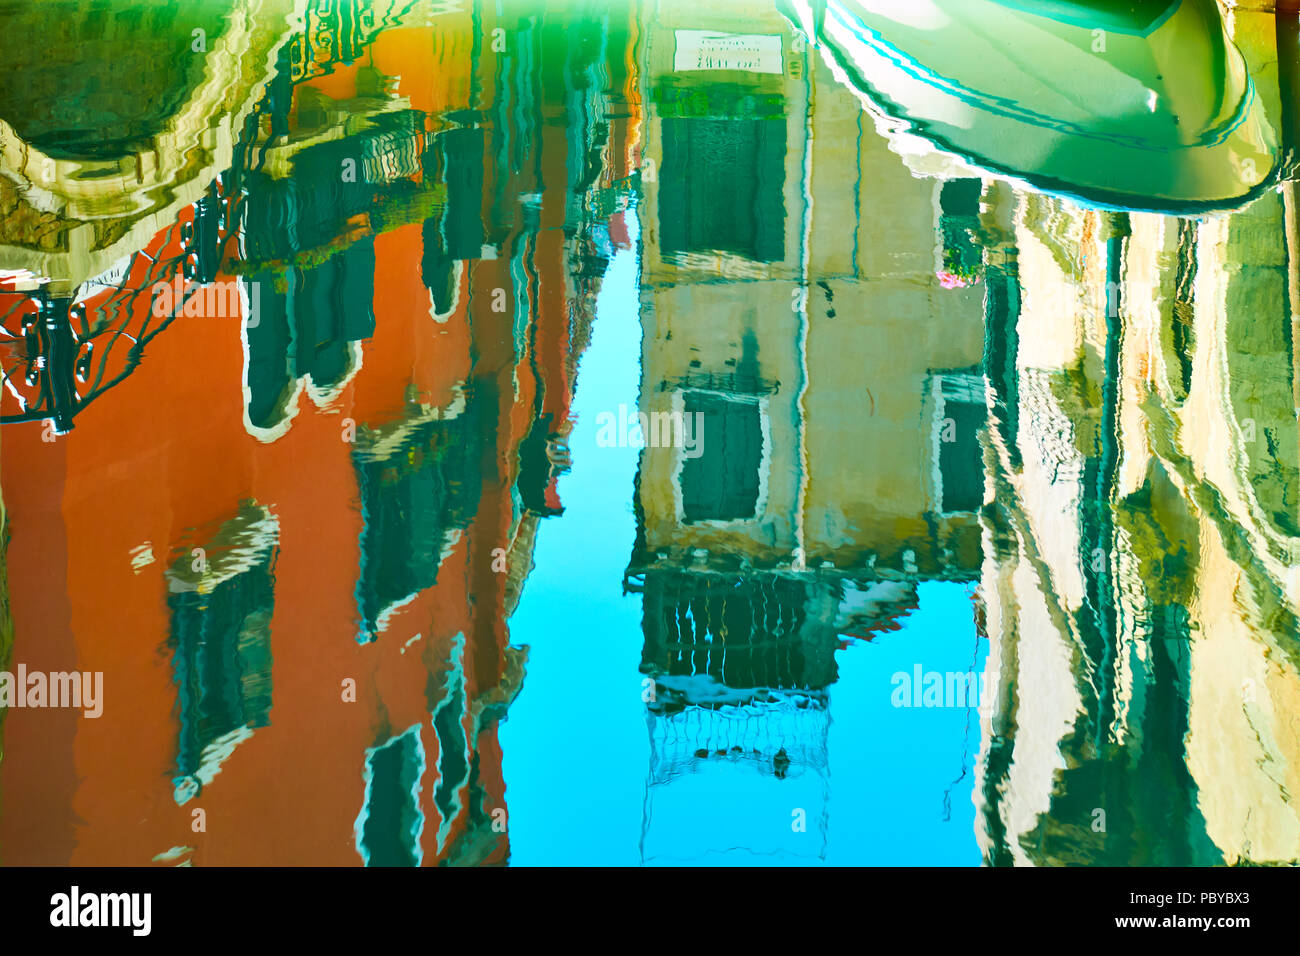 Venezianischer Spiegel - Gebäude, kleine Brücke, Boot und blauer Himmel im Wasser Oberfläche des Kanals widerspiegeln. Venedig im Wasser Reflexionen Stockfoto